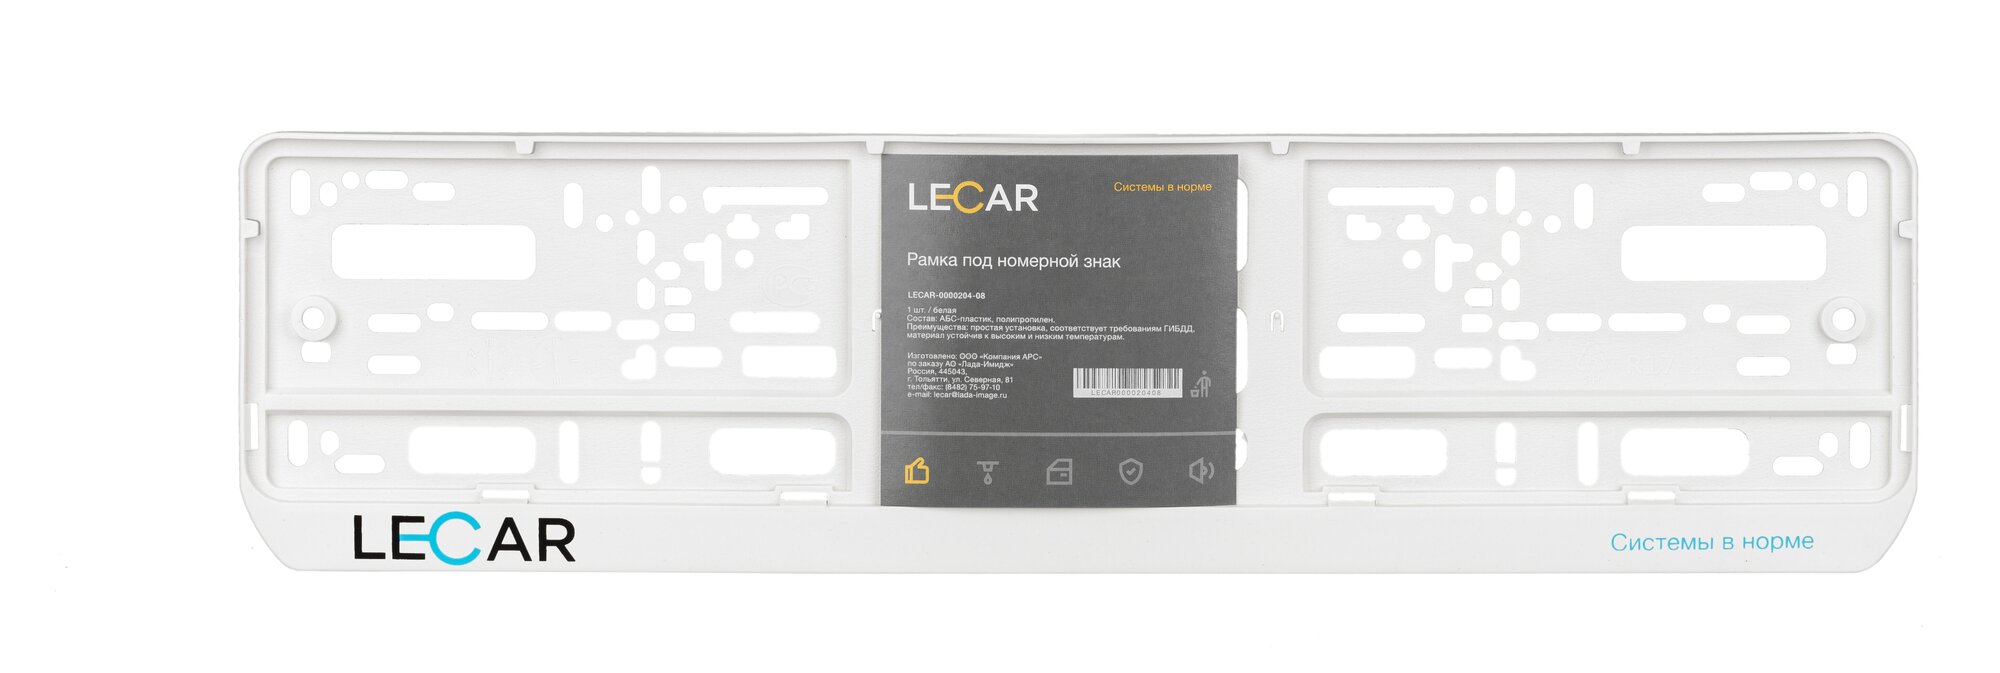 LECAR LECAR000020408 Рамка под номерной знак с лого односоставная (белая) LECAR LECAR000020408